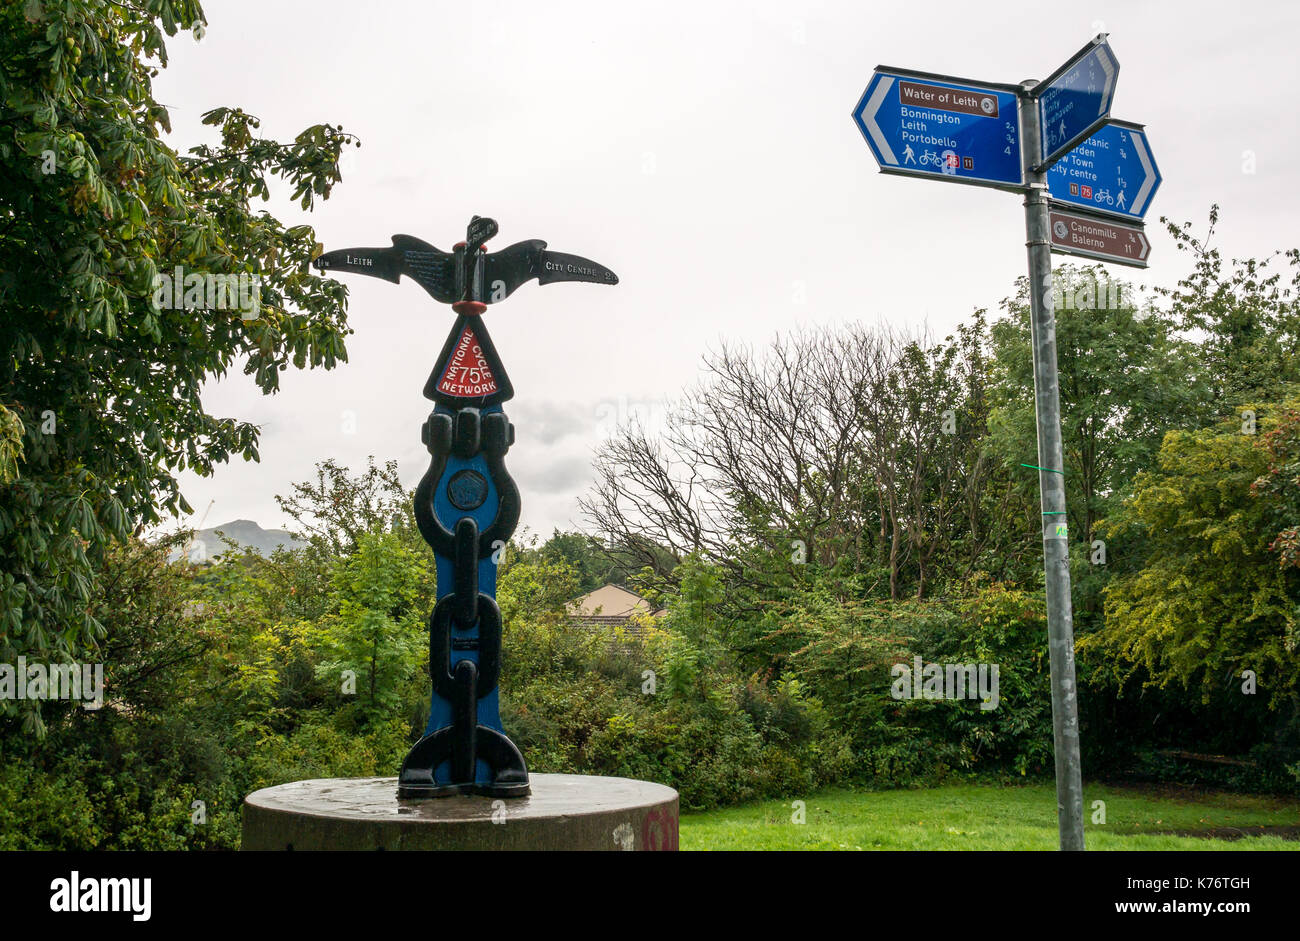 Randonnée à vélo 75 sign post directions sur eau de Leith walkway et piste cyclable, Stedfastgate, Warriston, Trinity, Édimbourg, Écosse, sur les mauvais jours Banque D'Images